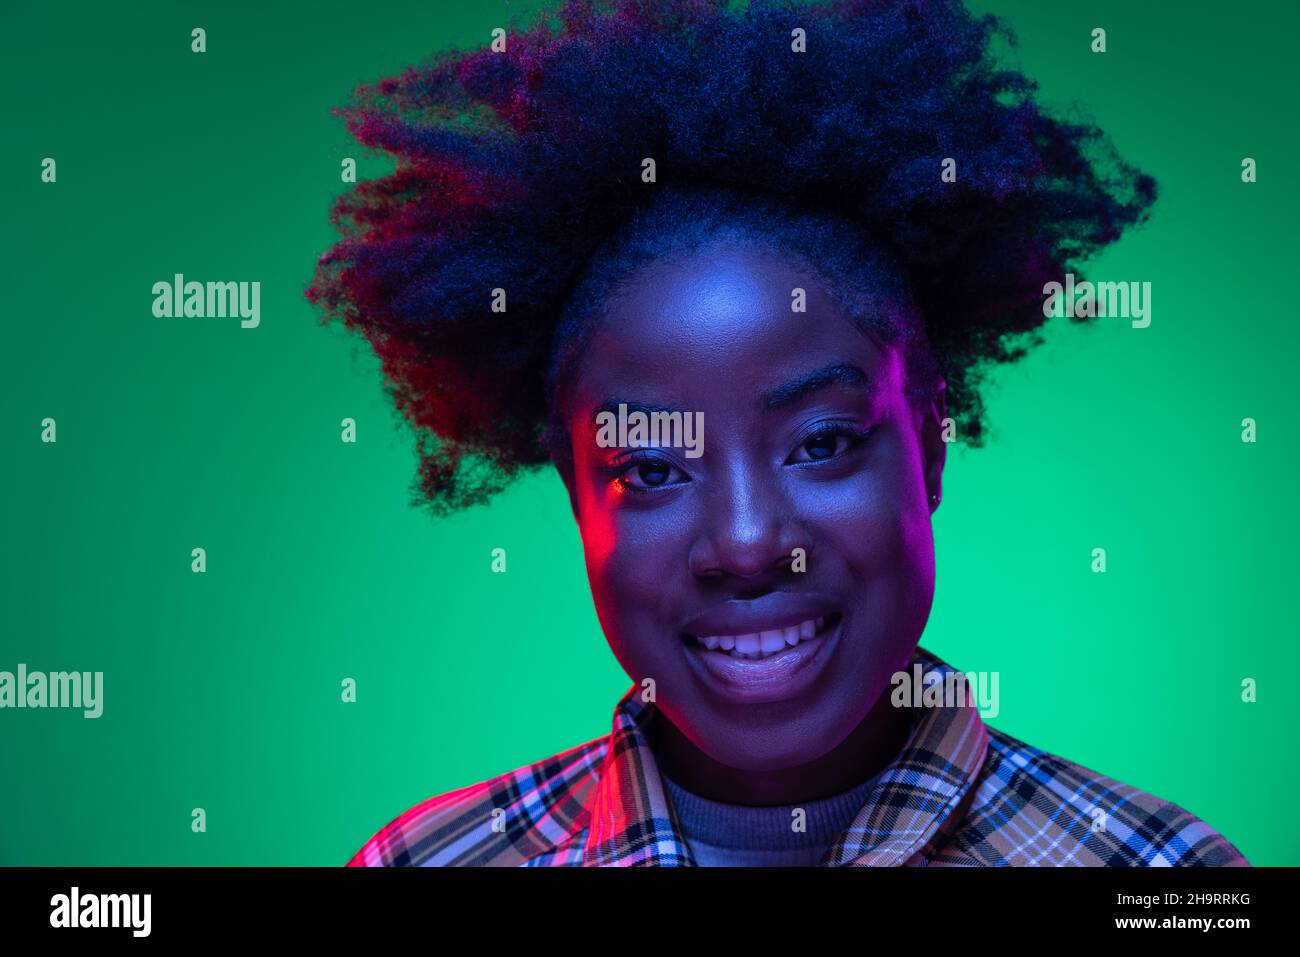 Gros plan sur le portrait d'une jeune fille africaine sur fond de studio vert foncé, dans une lumière de néon mauve.Hairdo afro.Concept des émotions humaines Banque D'Images